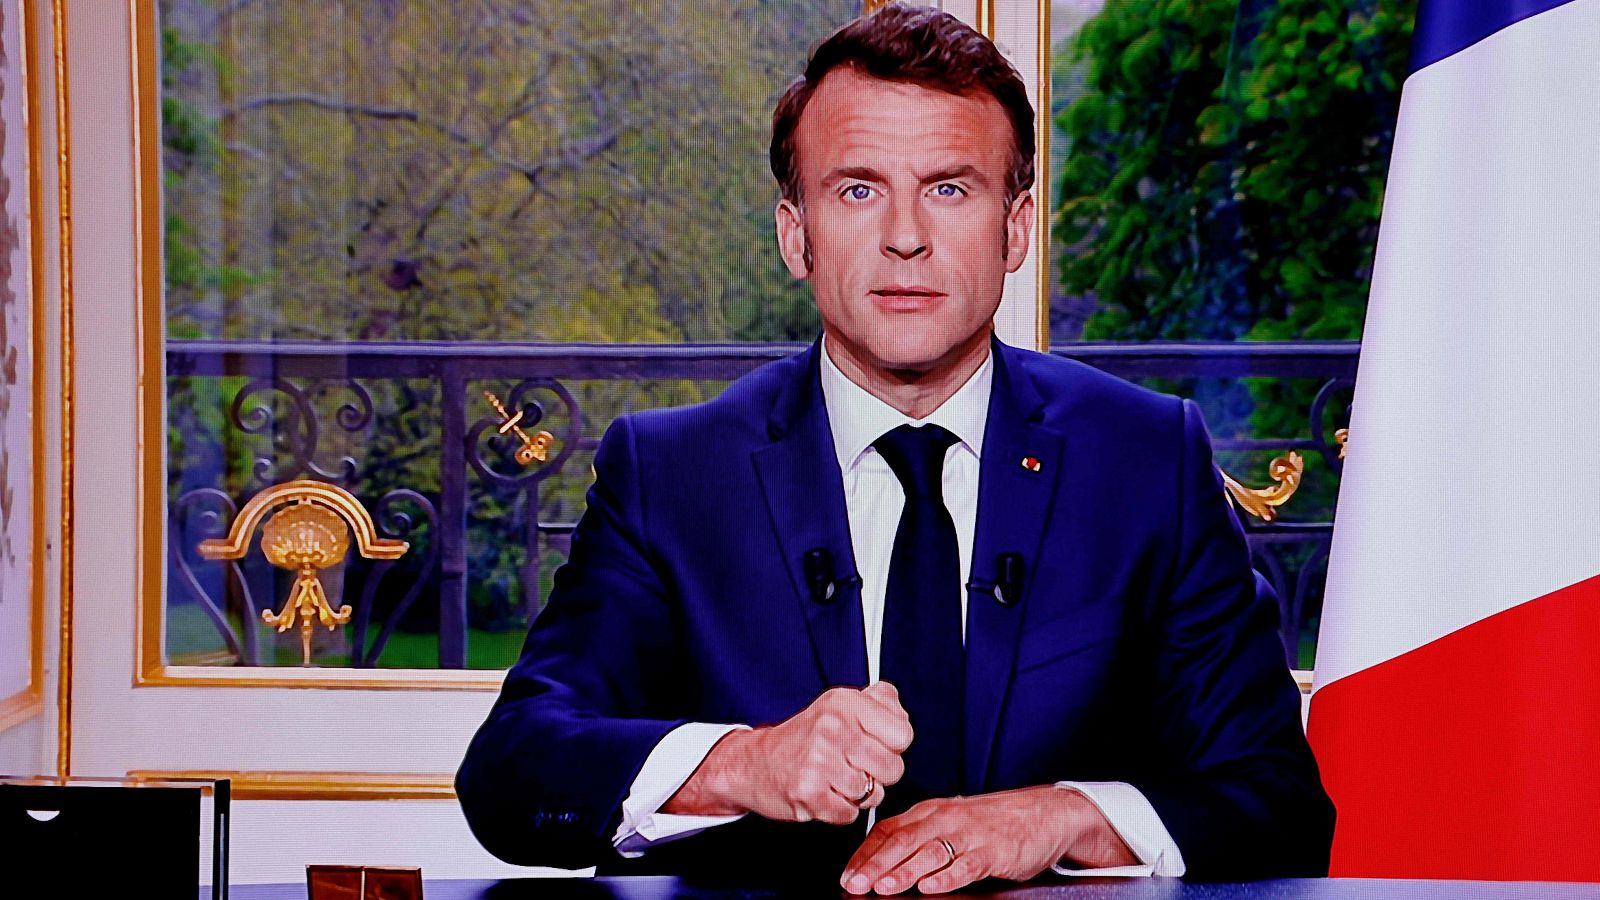 Macron defiende su reforma de pensiones y tiende la mano a los sindicatos en un discurso televisado